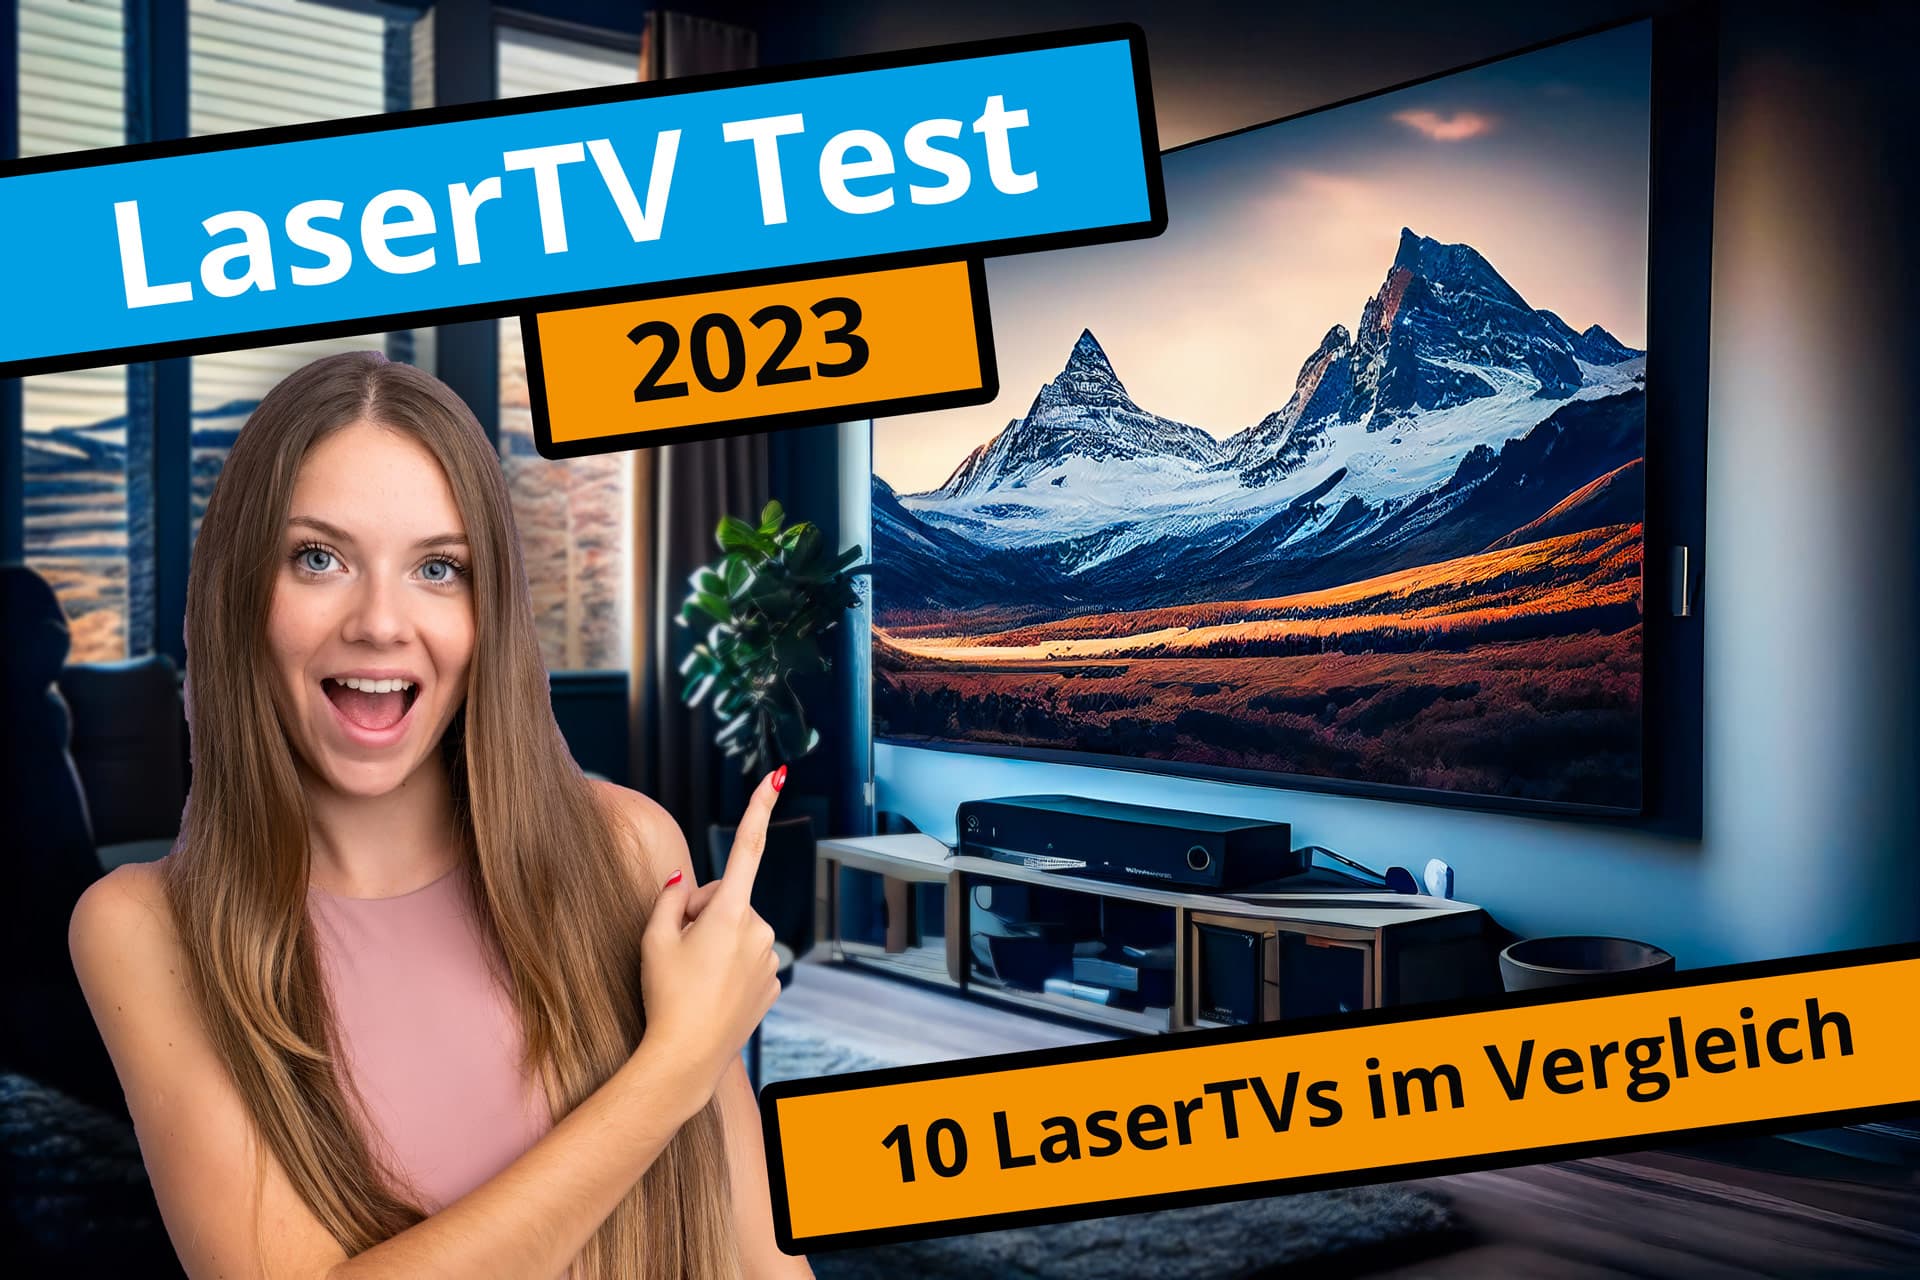 Laser-TV-Test-2023-10-laserTV-im-vergleich